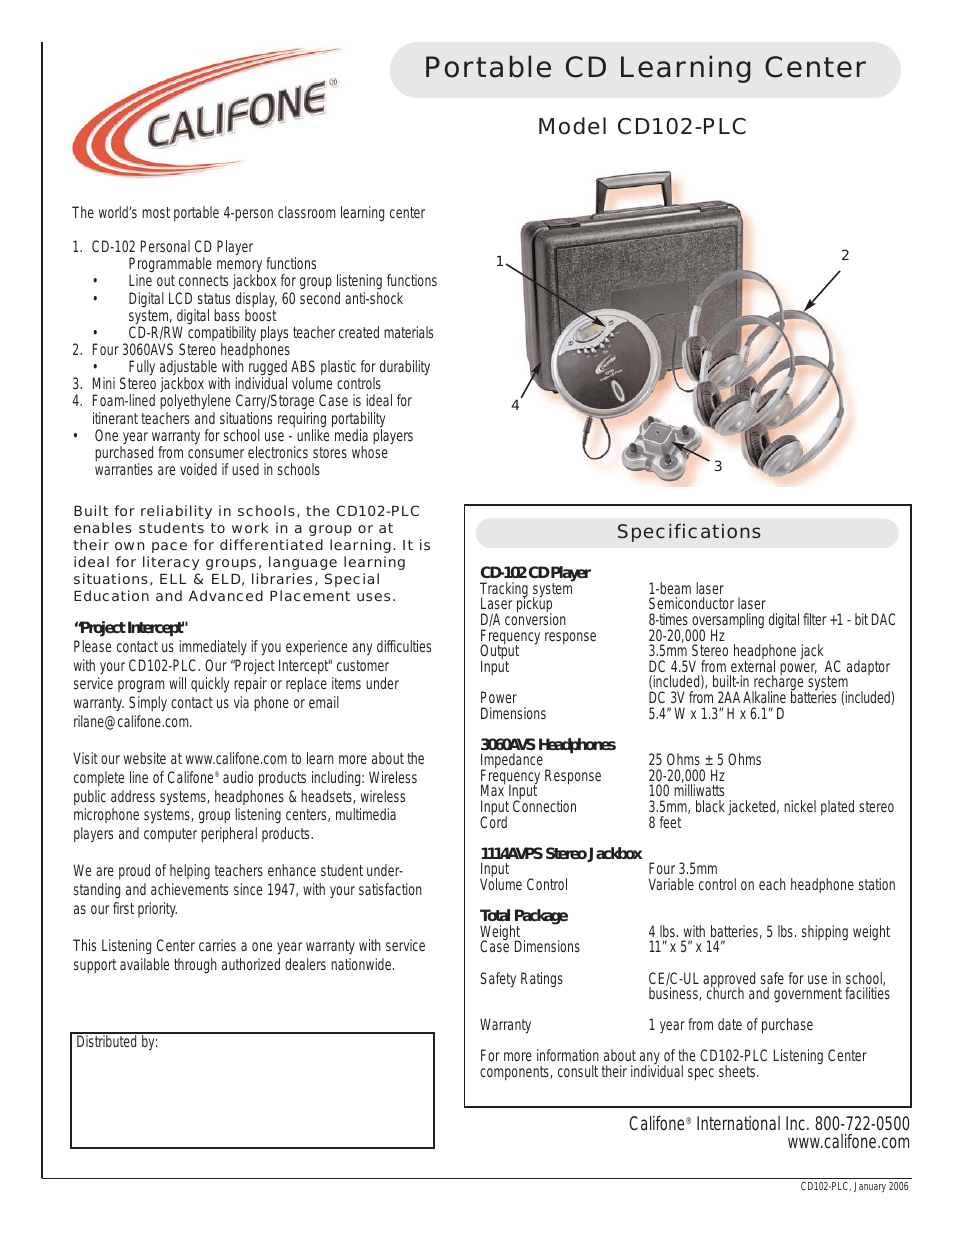 CD102-PLC (Page 1)